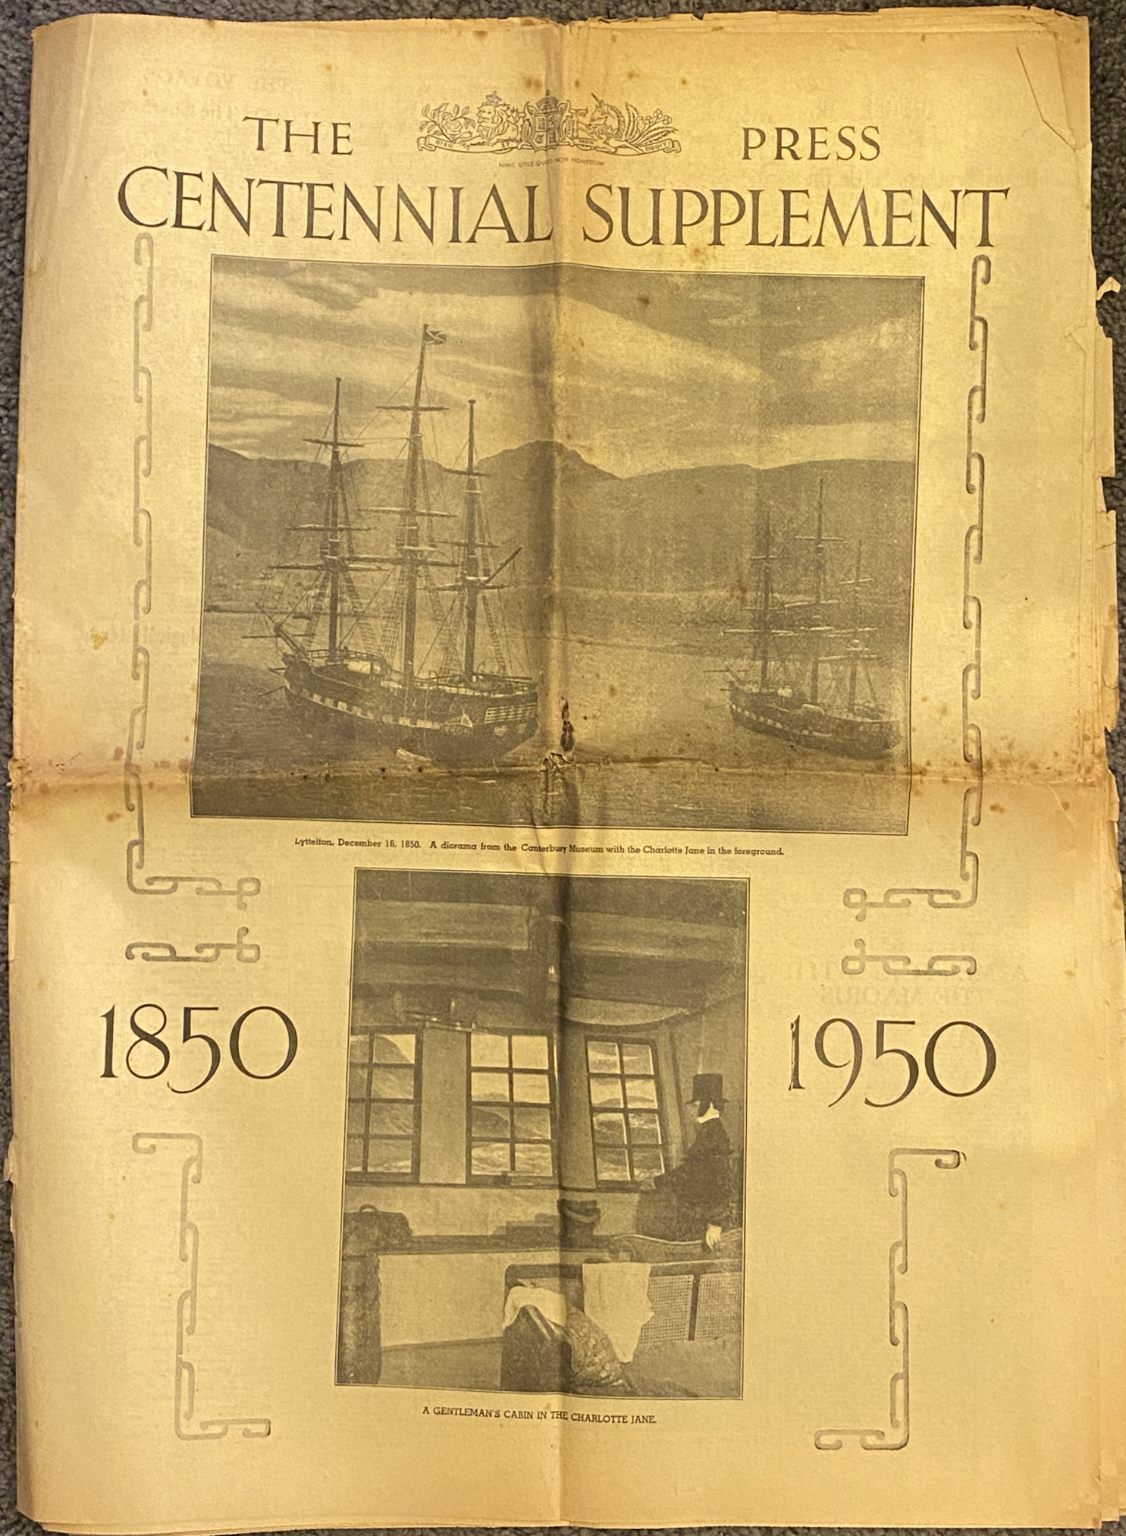 OLD NEWSPAPER: The Christchurch Press Centennial Supplement 1850 - 1950